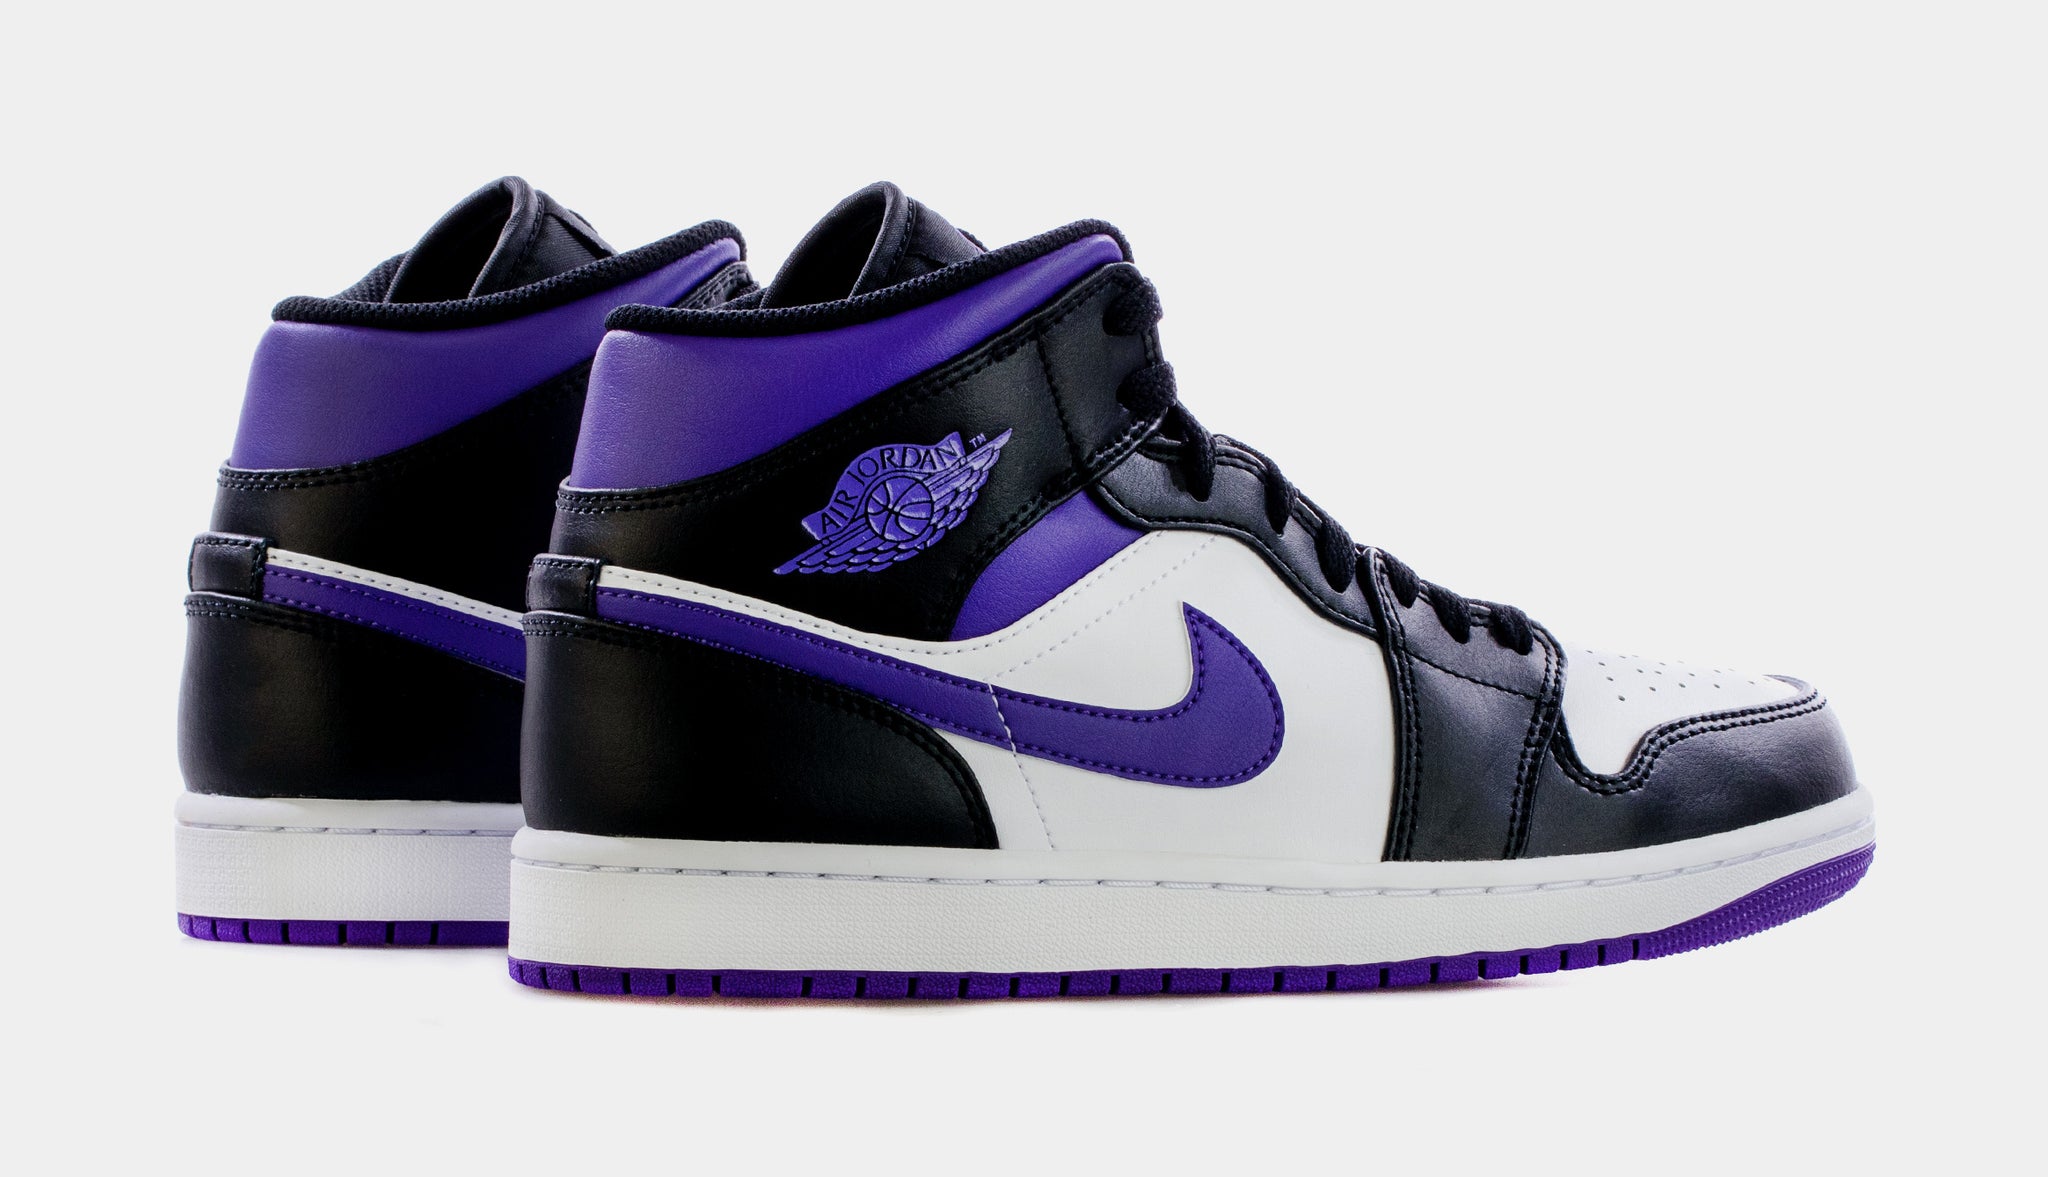 Air Jordan 1 Mid Court Purple Mens Lifestyle Shoes (Black/Purple)